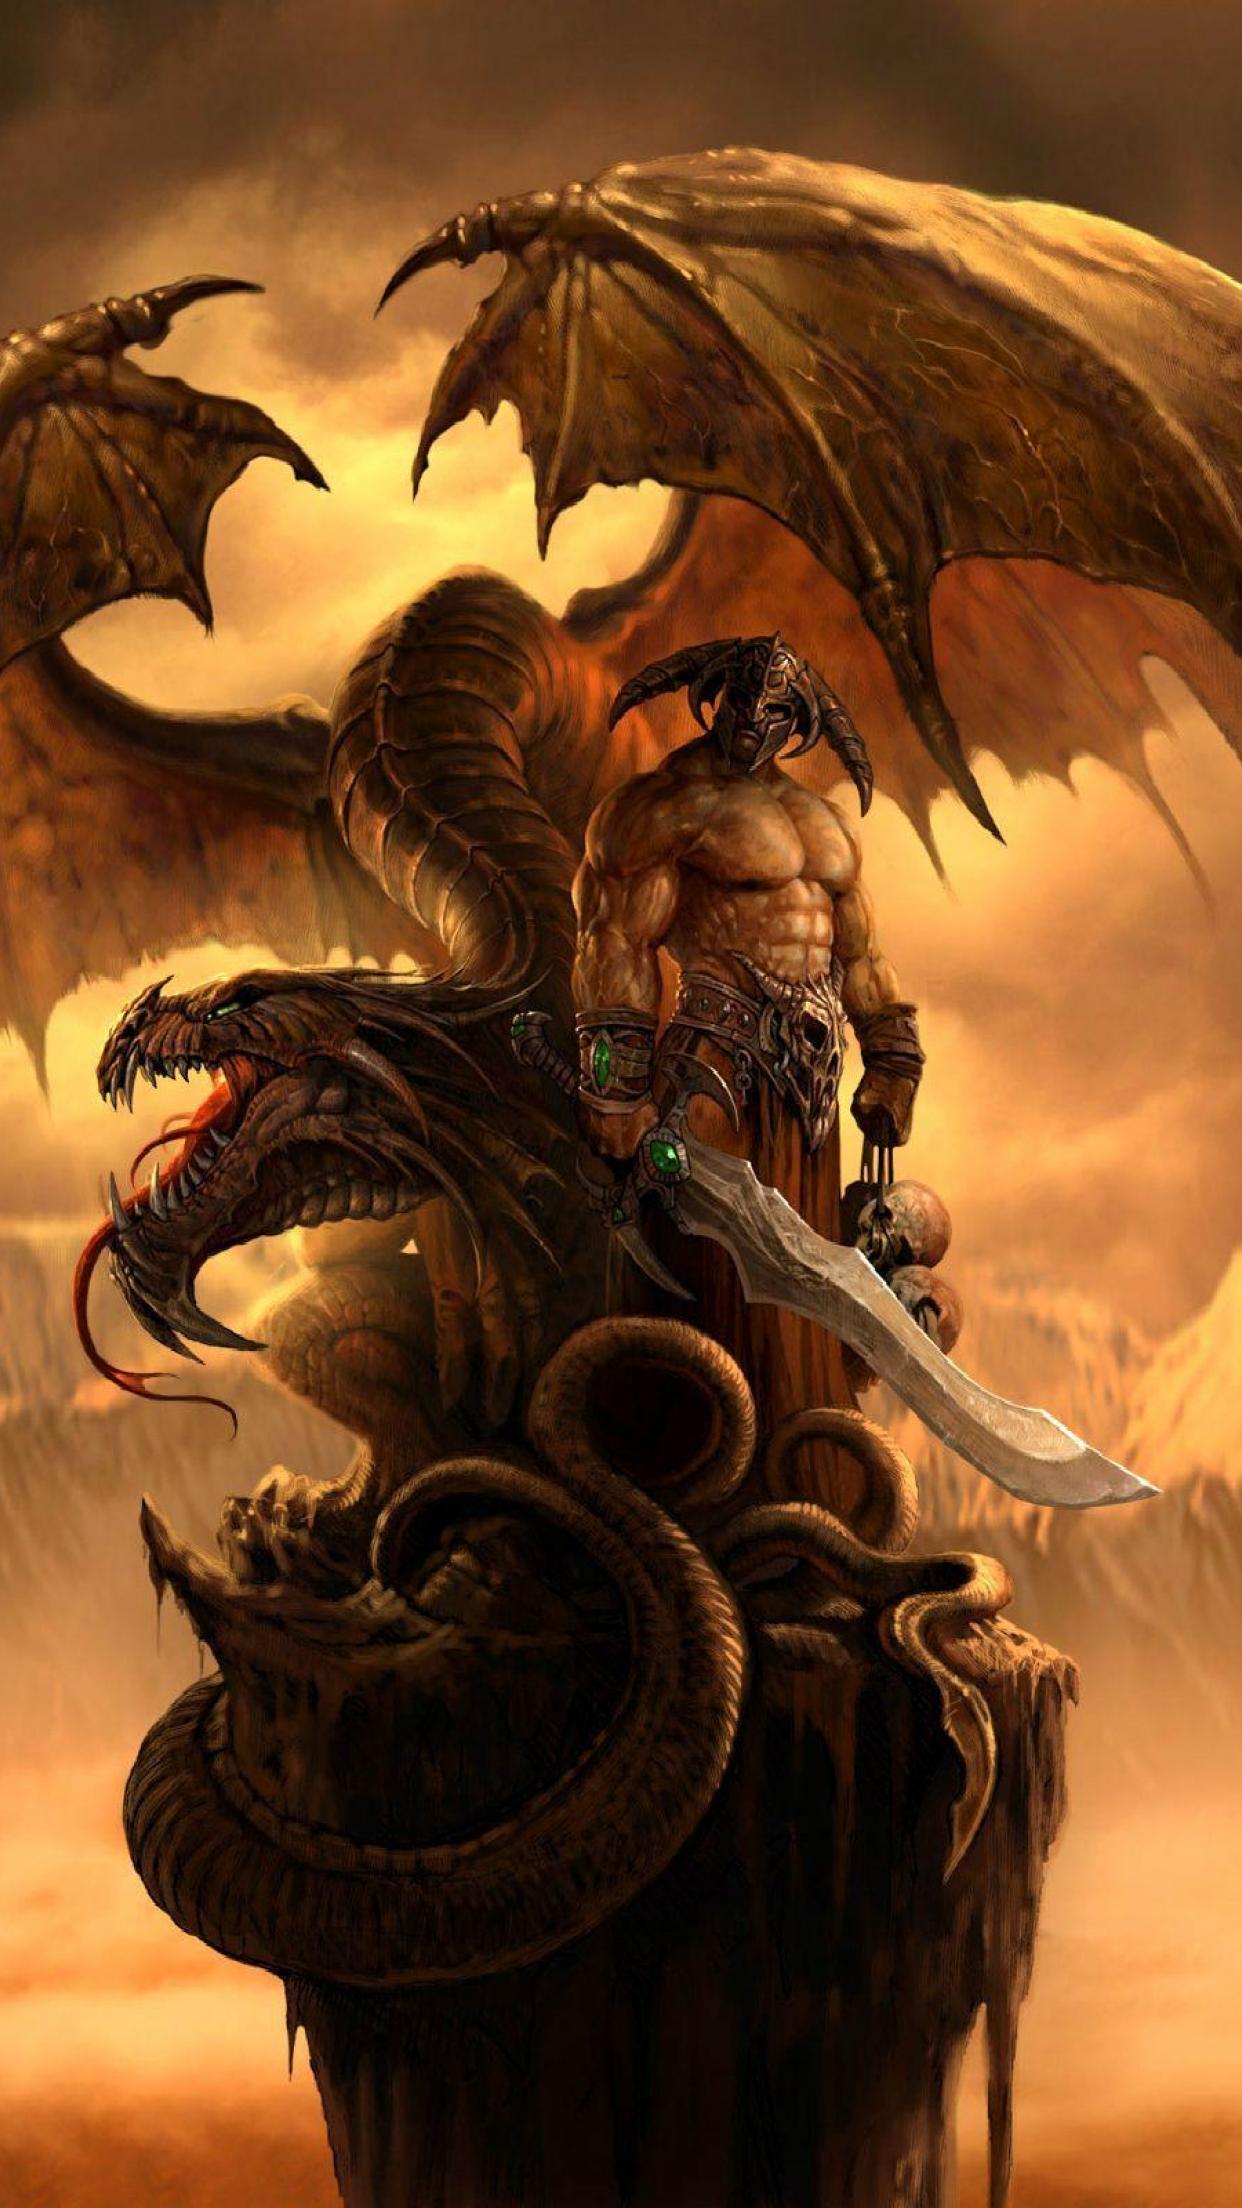 The Dragon, Dragon, Fantasy, Art (1522x3296) - Desktop & Mobile Wallpaper